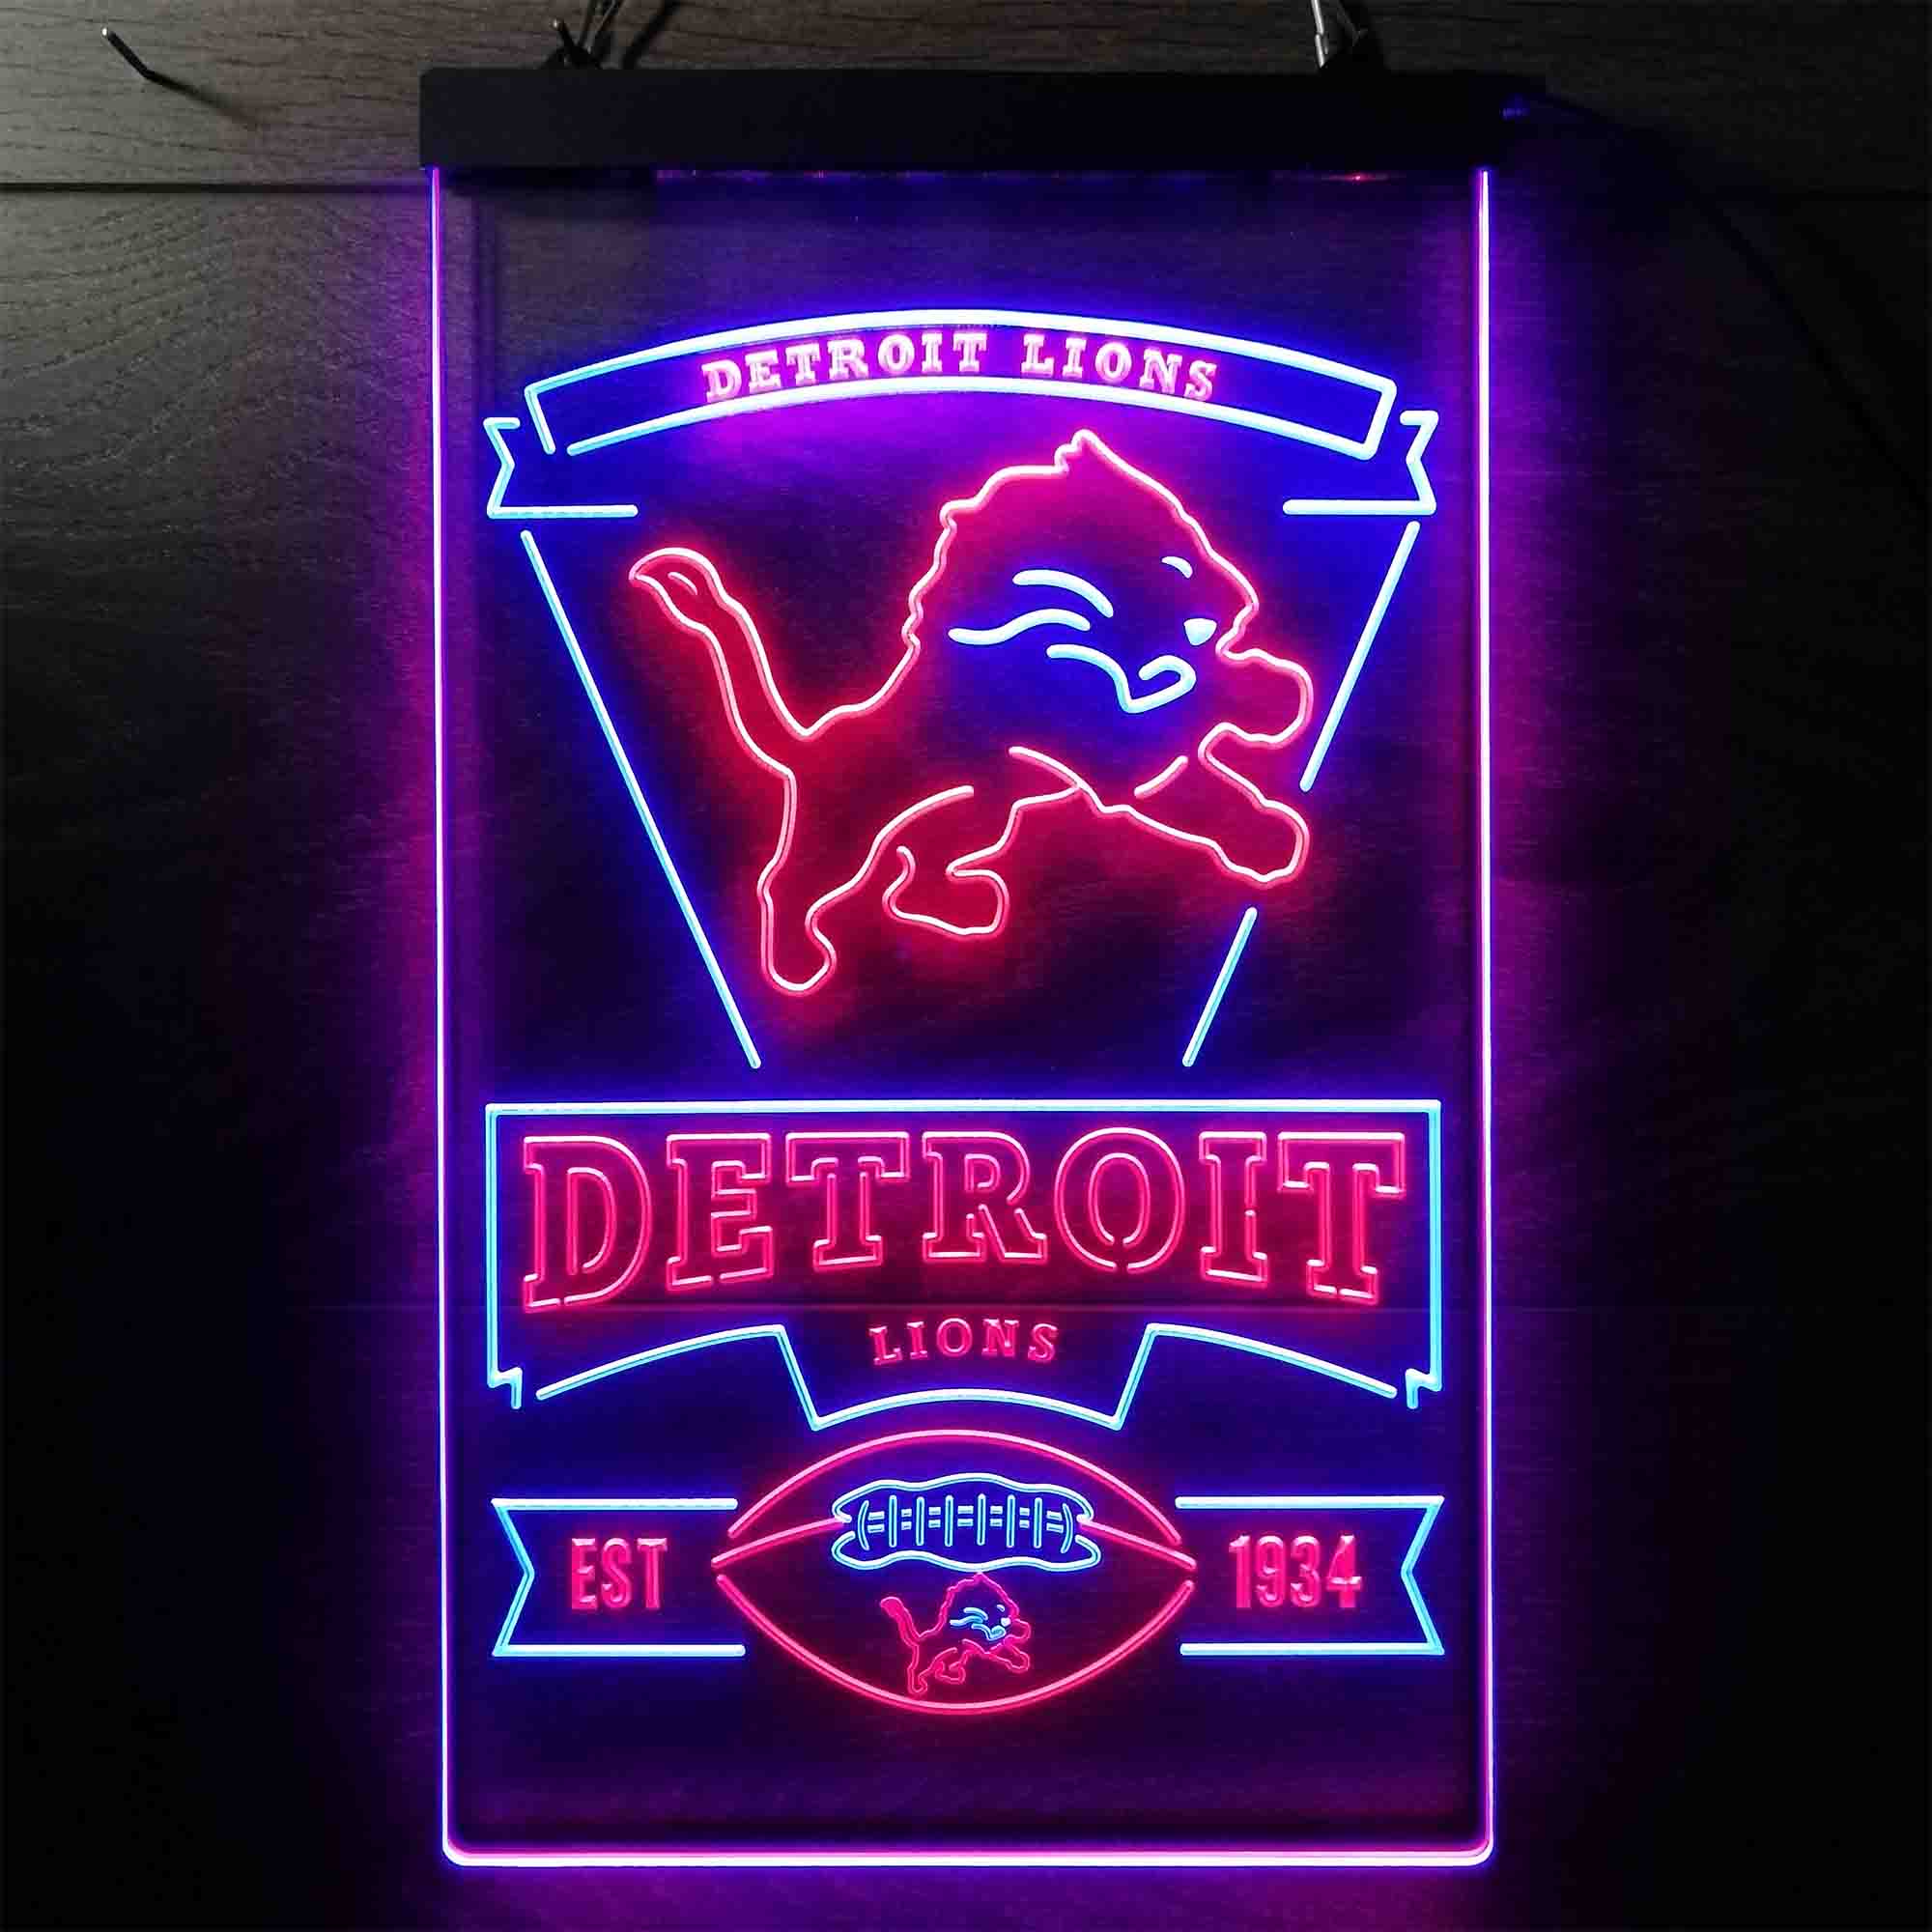 Detroit Lions Est. 1934 LED Neon Sign